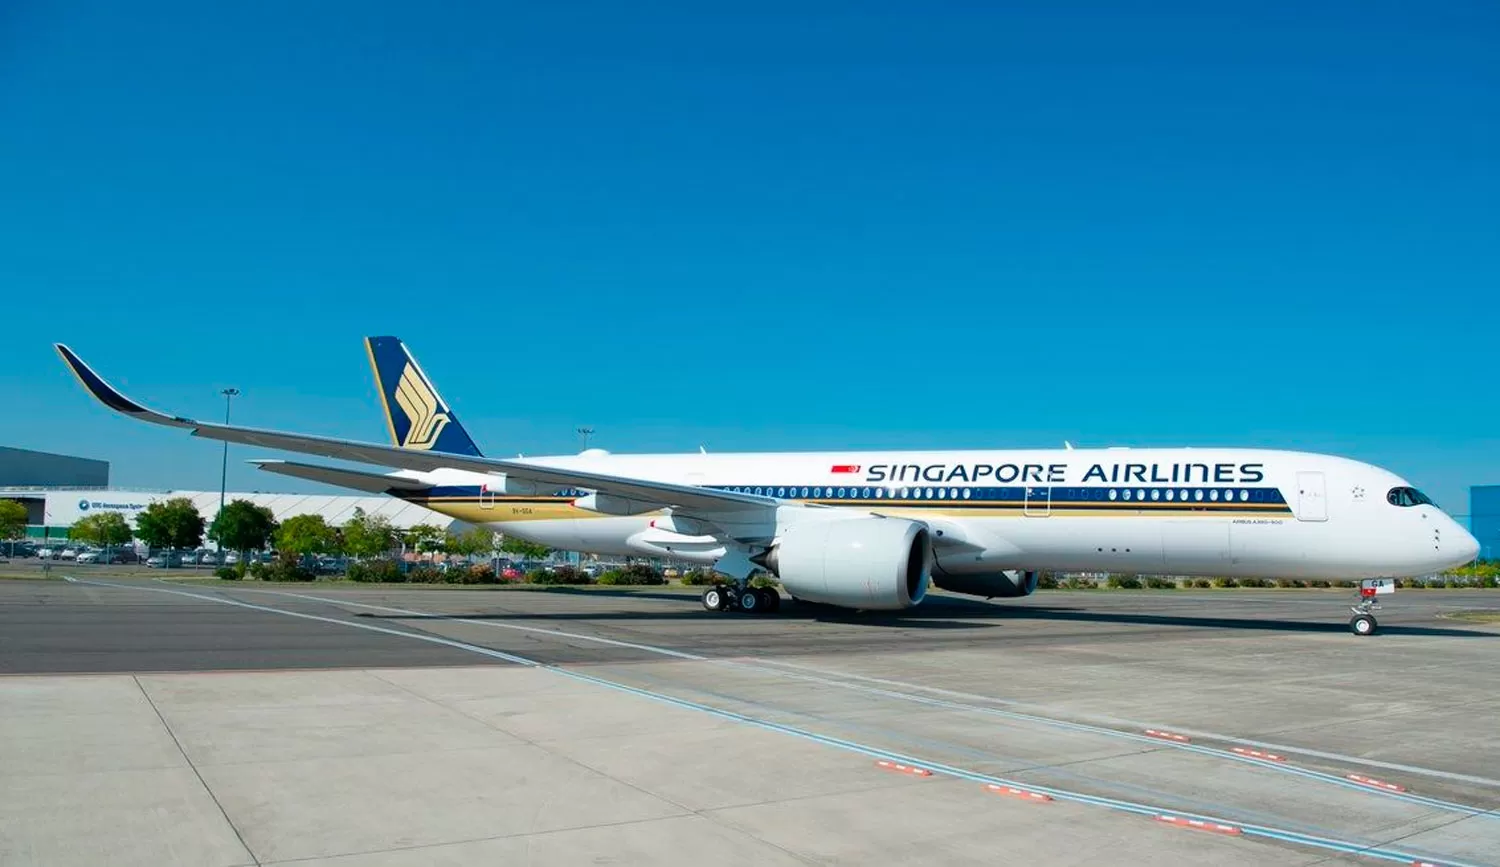 SINGAPORE AIRLINES. Lanza el vuelo directo más largo del mundo.